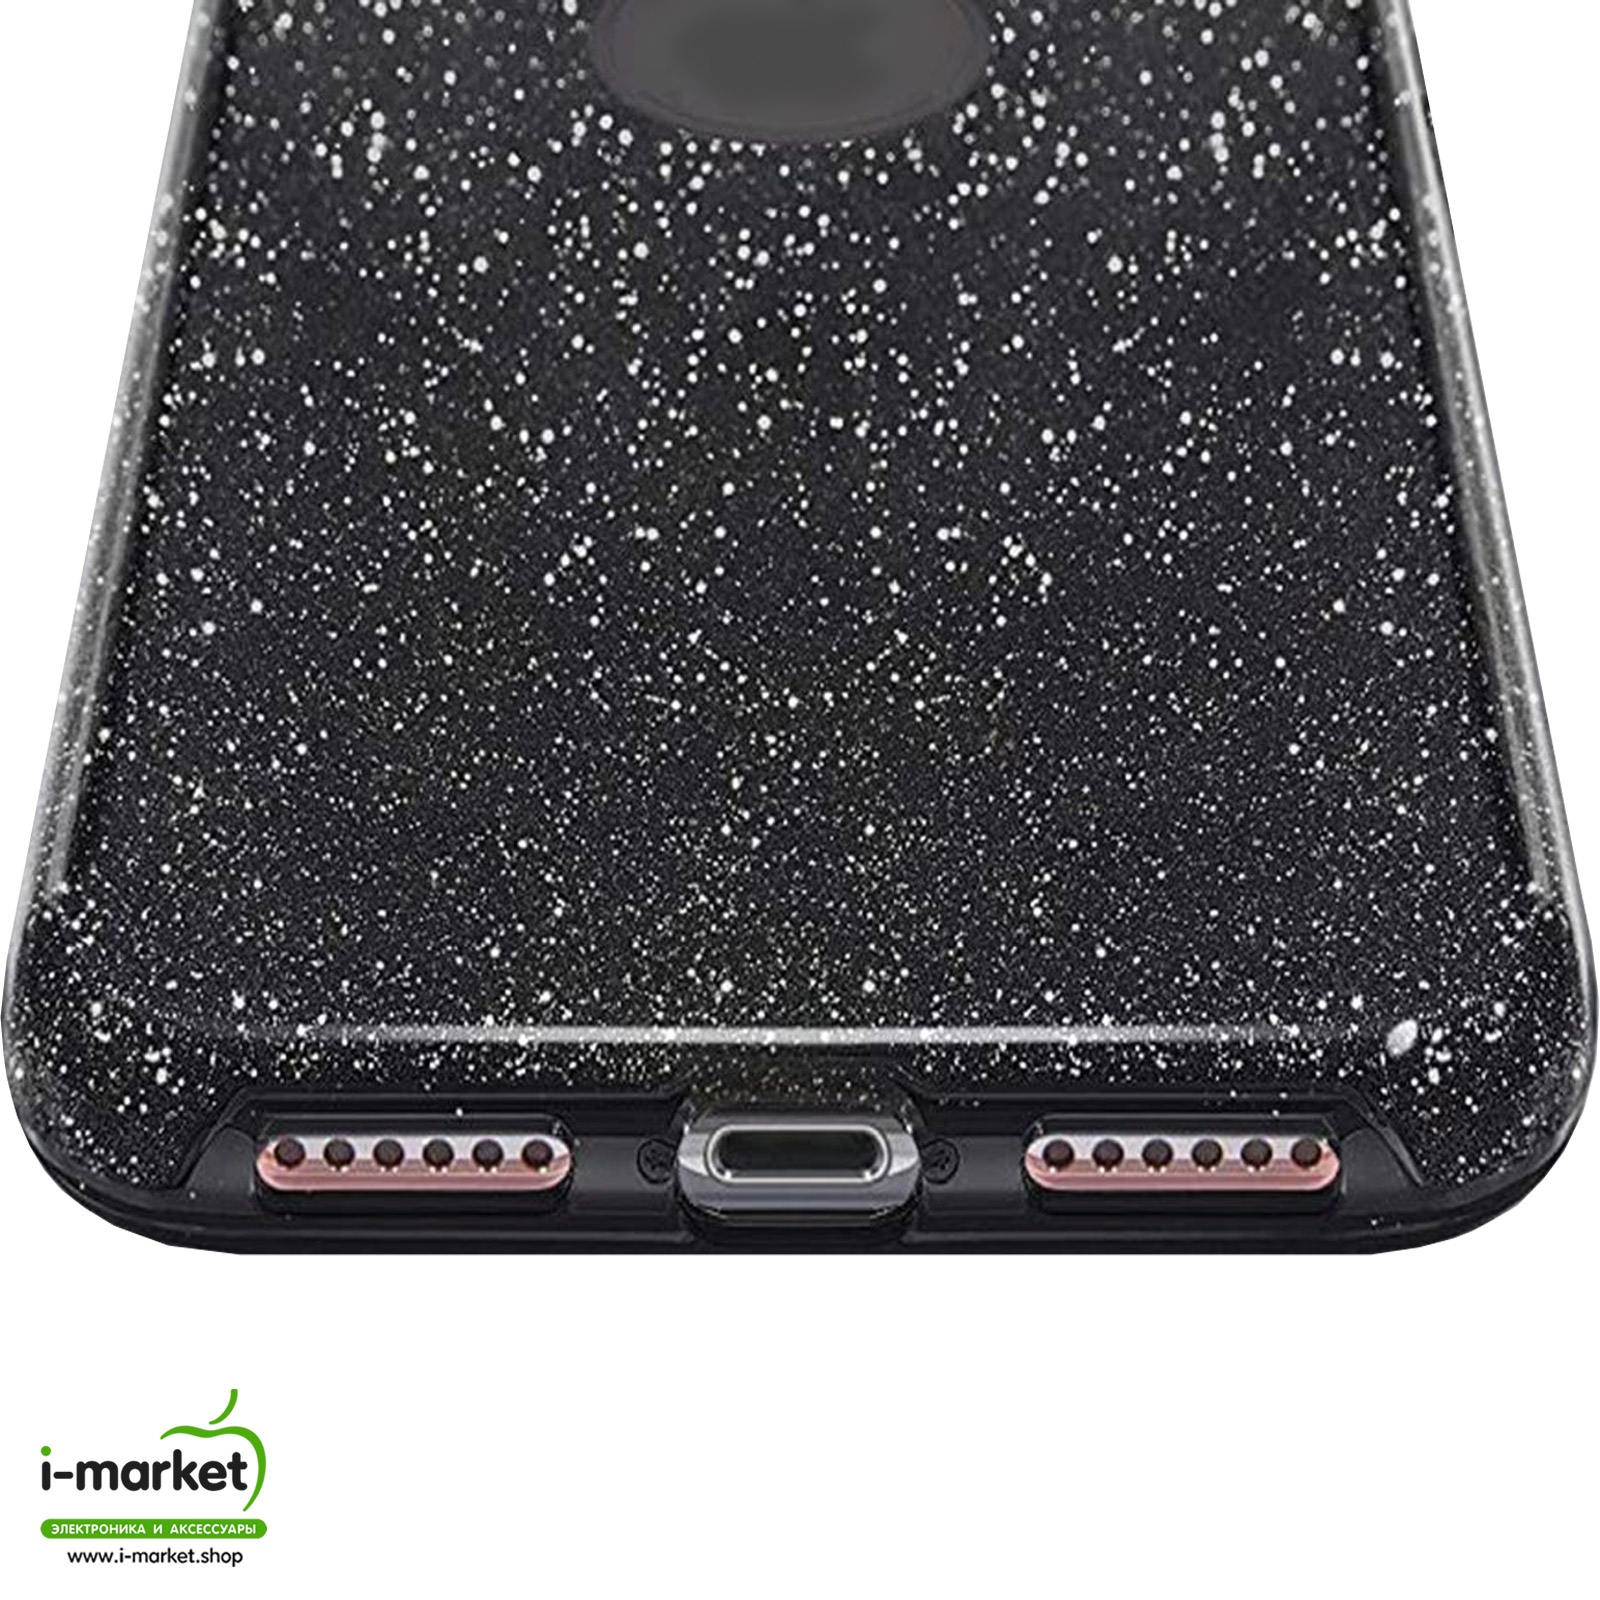 Чехол накладка Shine для APPLE iPhone 6 Plus, 6S Plus, силикон, блестки, цвет черный